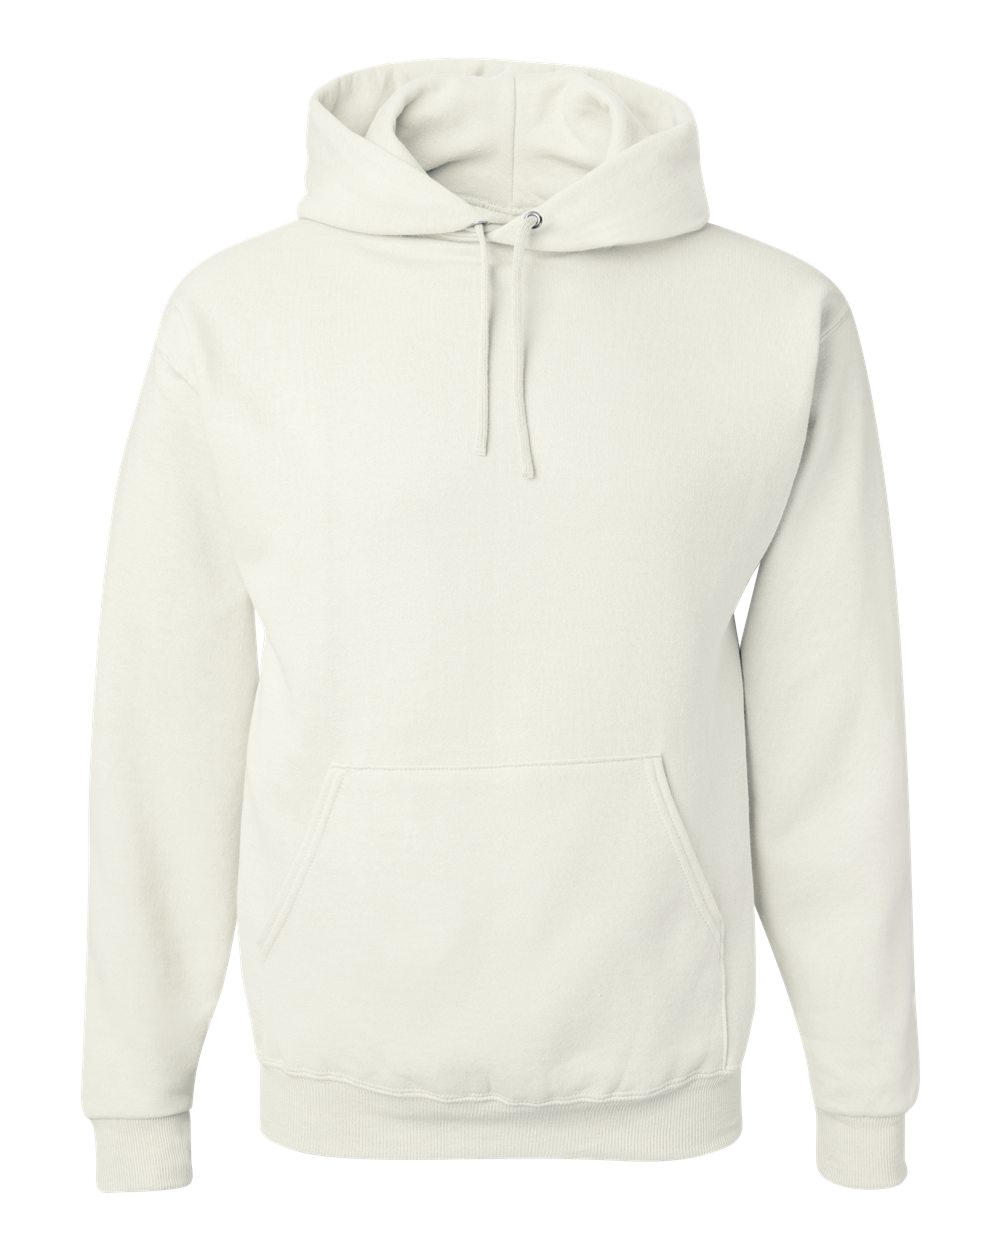 mens hoodies NuBlend® Hooded Sweatshirt